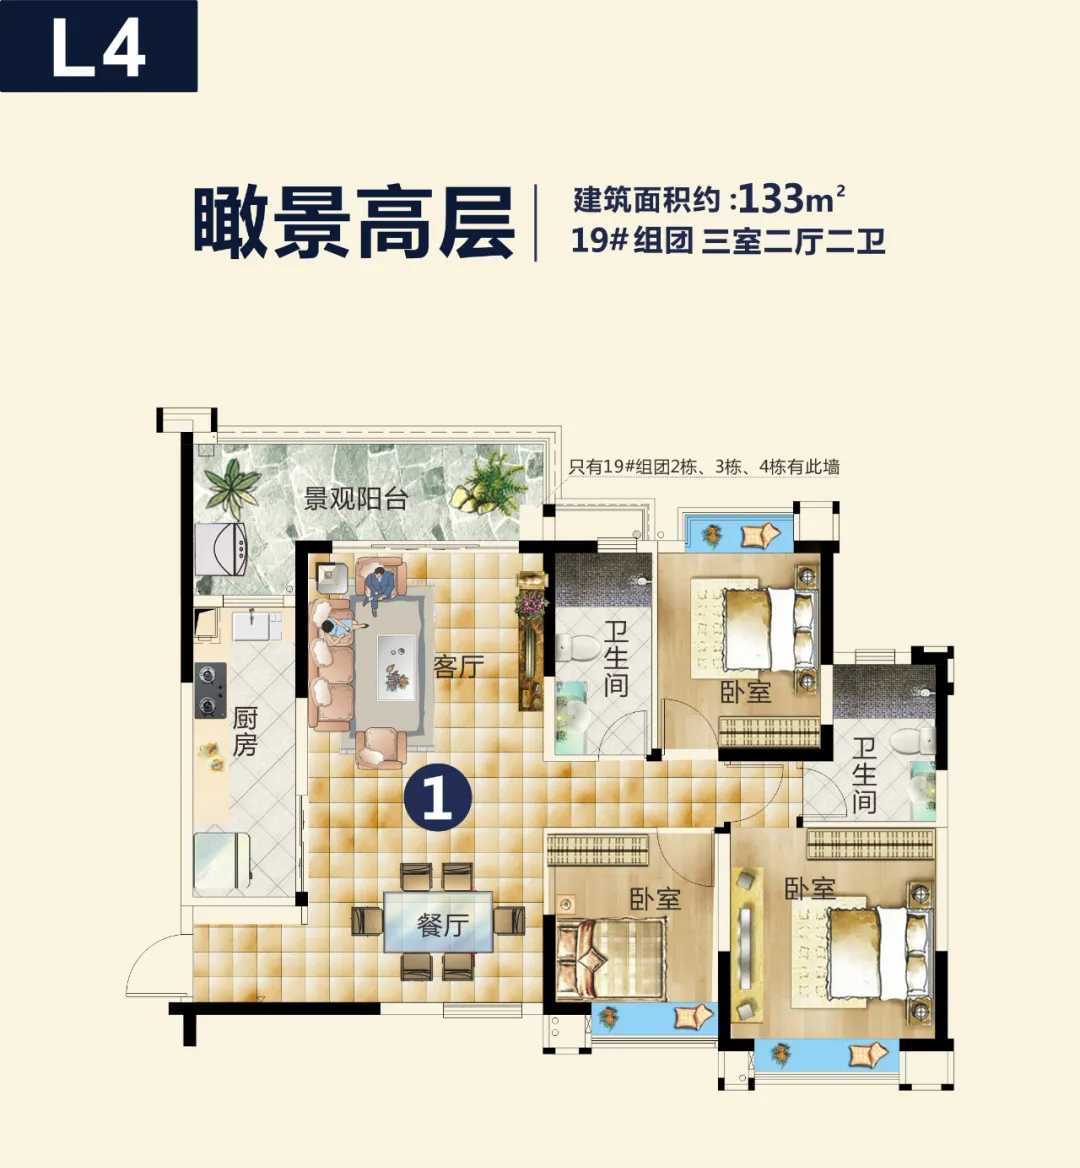 貴陽恒大文化旅遊城推出19組團L4 三室二廳樂園裝修高層-中國網地産